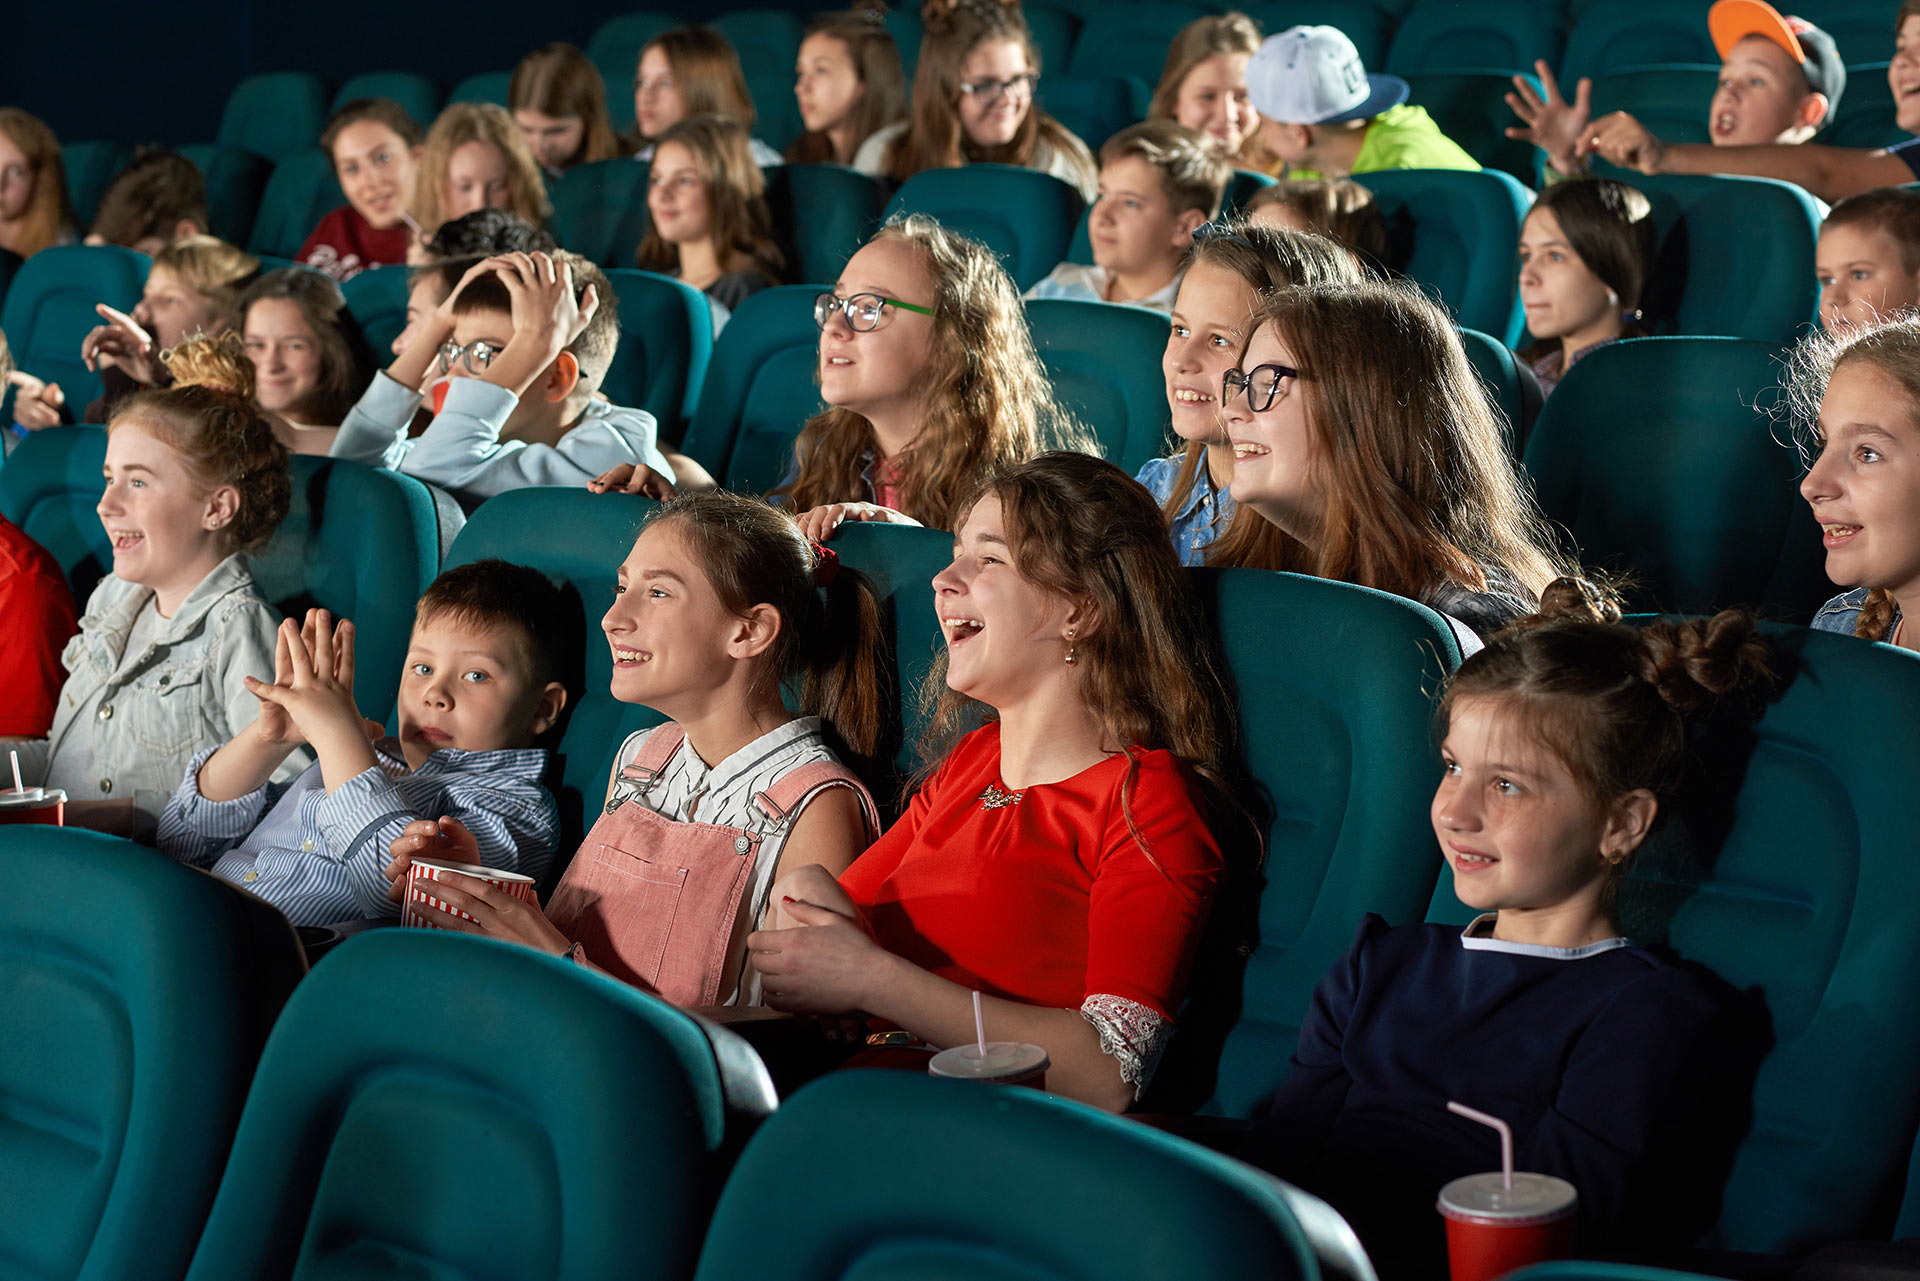 jeune public au cinéma - Photo Serhii Bobyk / Shutterstock_1064818094